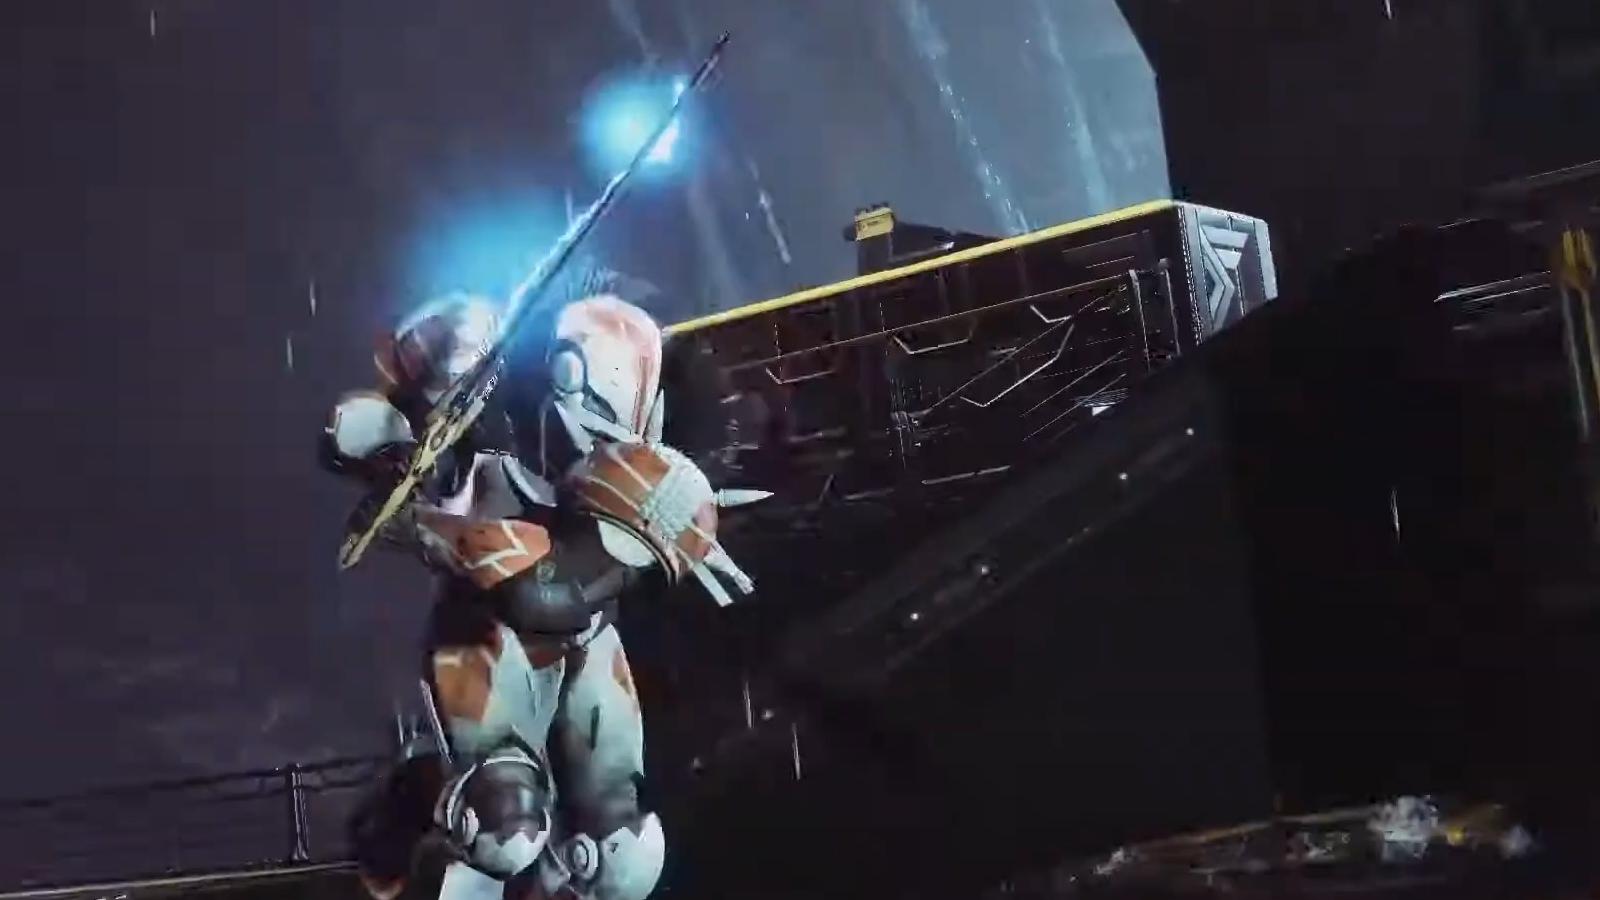 Worldline Zero exotic sword being held by Titan in Destiny 2.